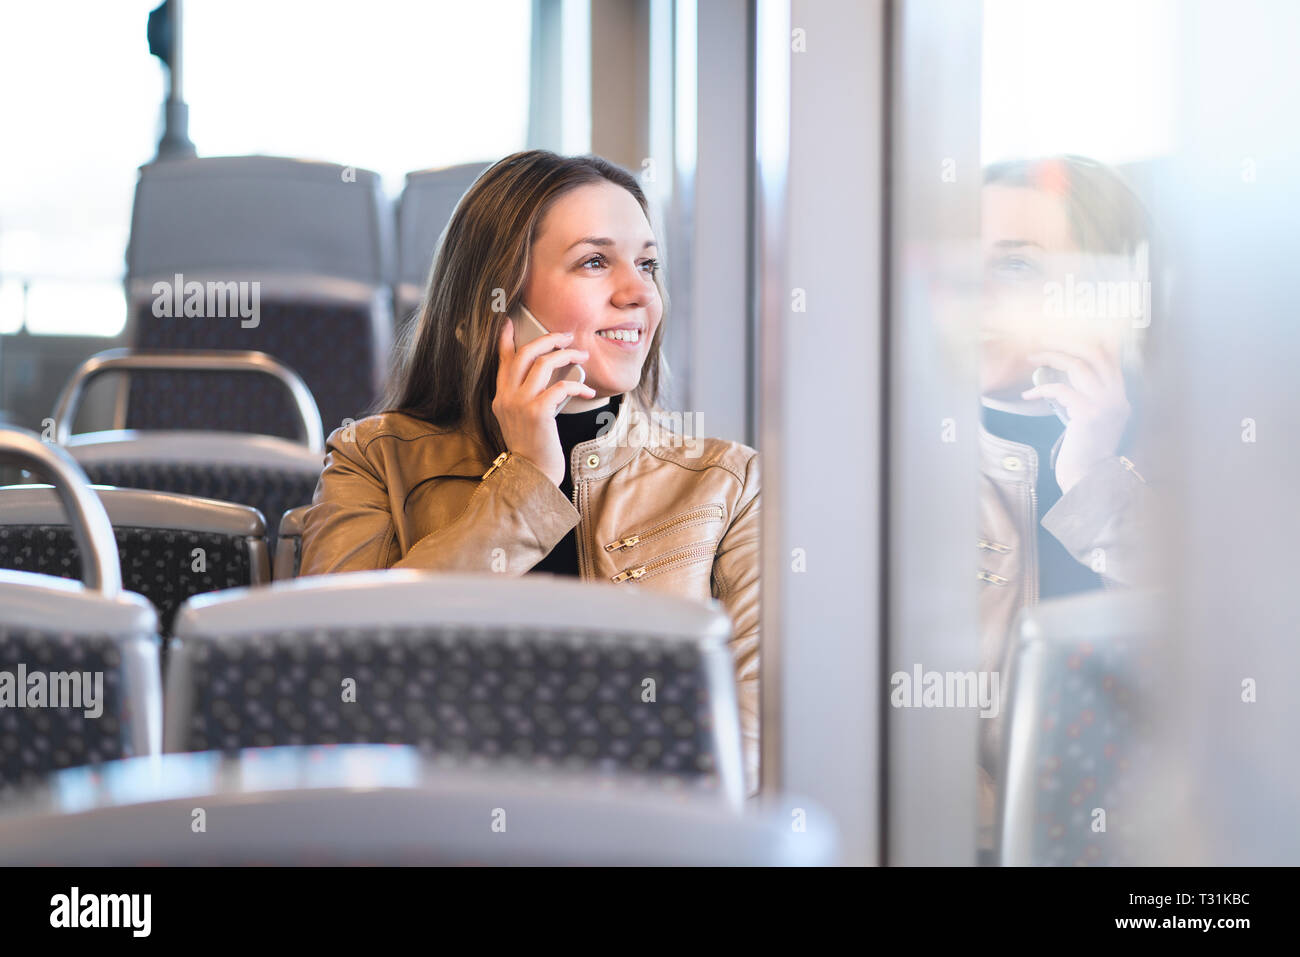 Frau Telefonieren während der Fahrt mit dem Bus, Bahn, U-Bahn oder der U-Bahn. Glückliche Dame mit Smartphone in öffentlichen Verkehrsmitteln Blick aus dem Fenster. Stockfoto